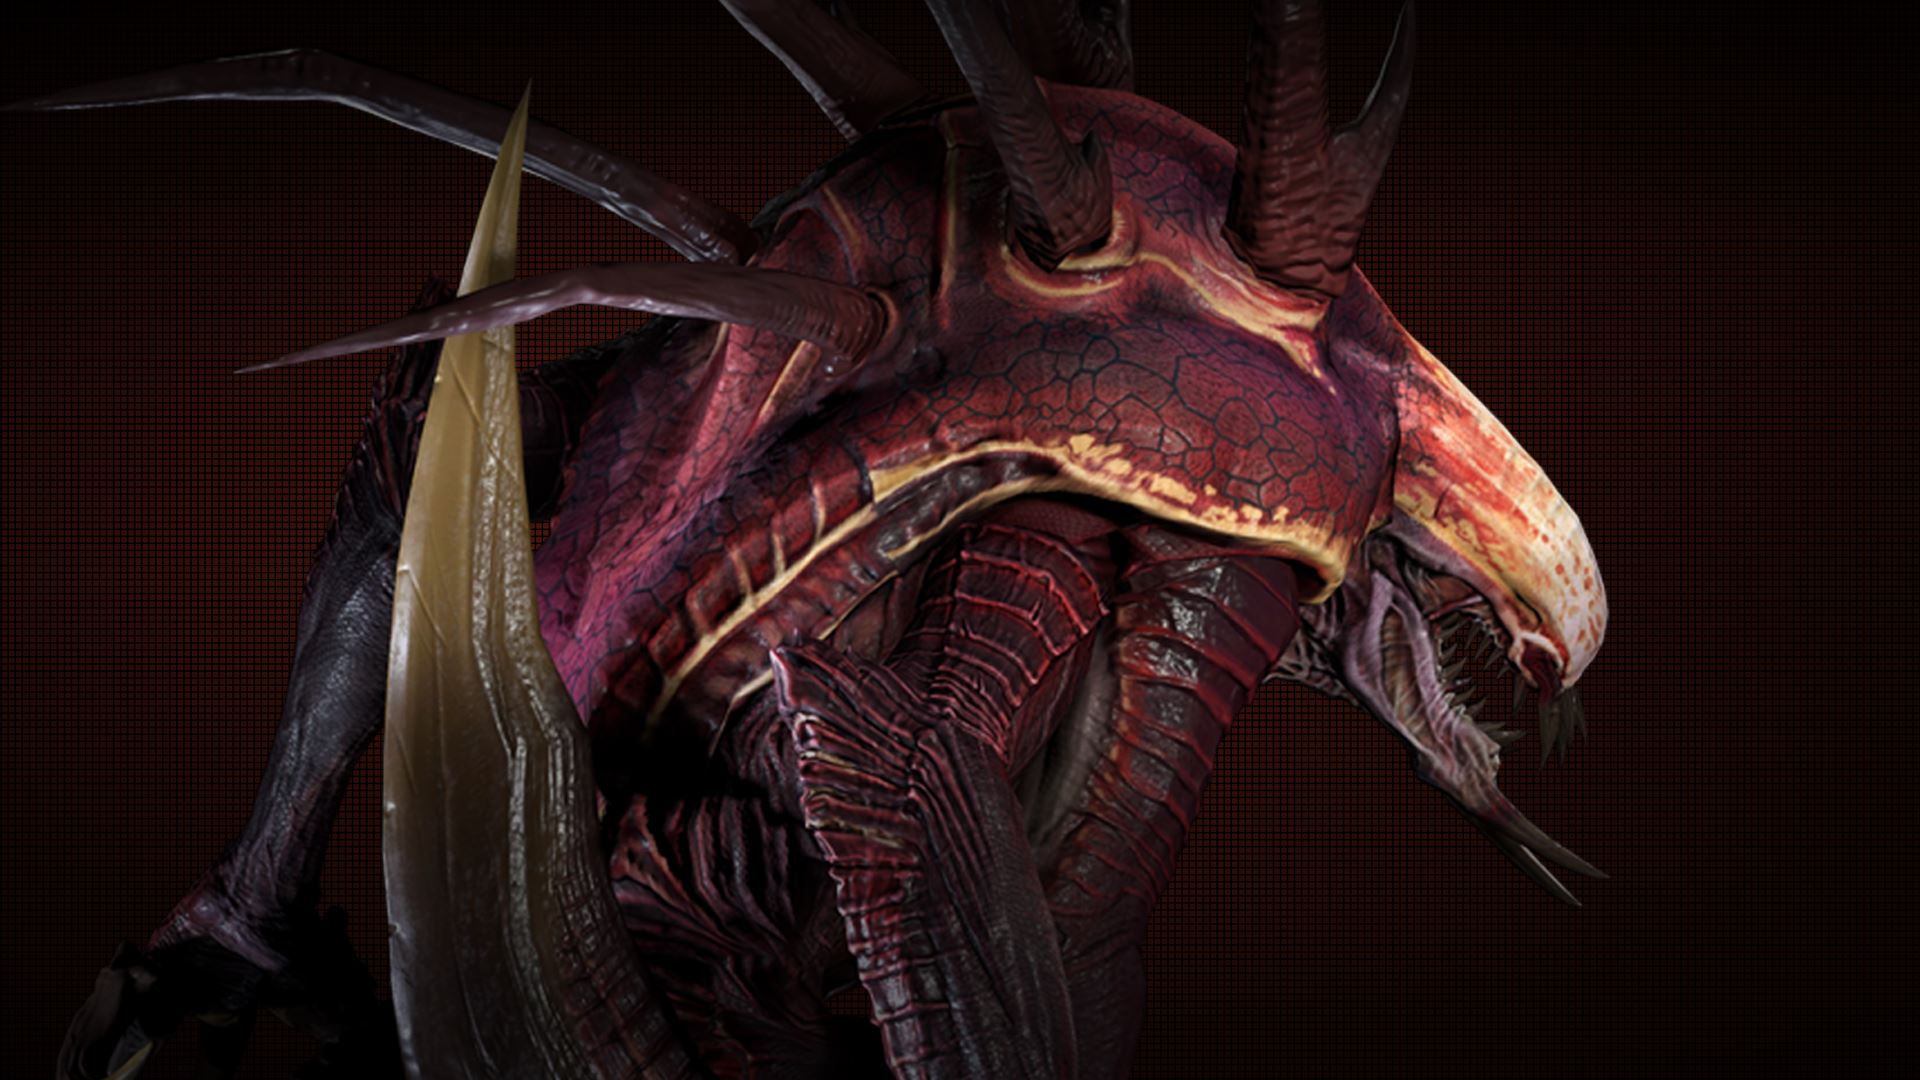 Evolve Monster Wraith Full HD Wallpaper On